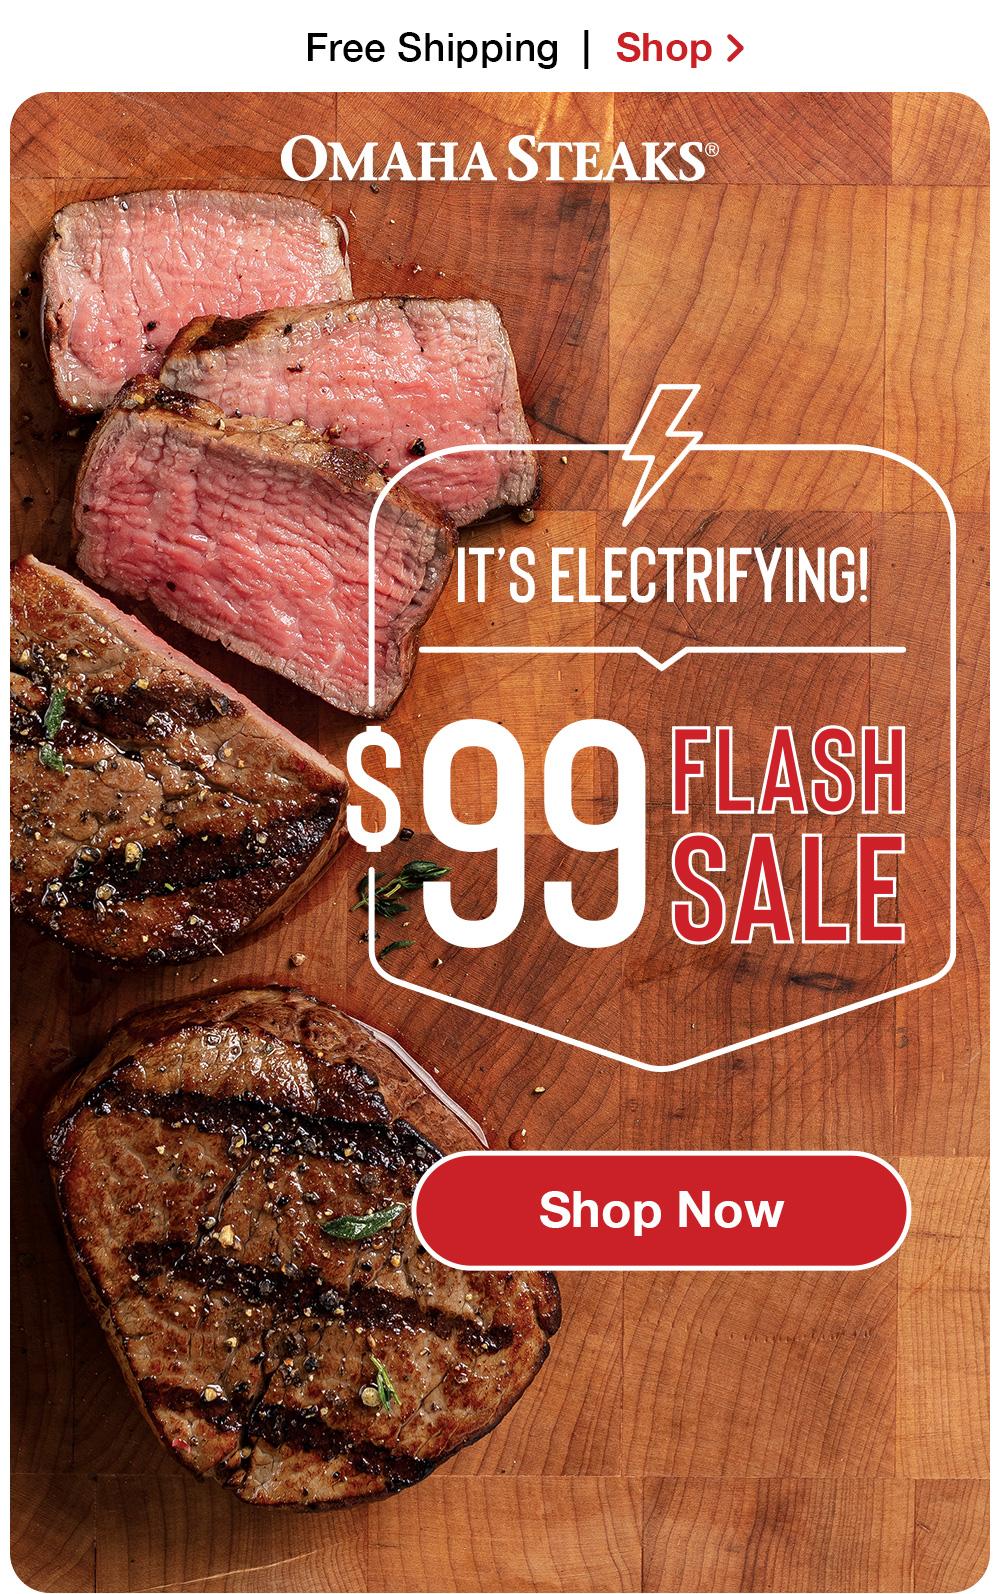 $99 Flash Sale! | Shop Now > OMAHA STEAKS® IT'S ELECTRIFYING! $99 FLASH SALE || Shop Now